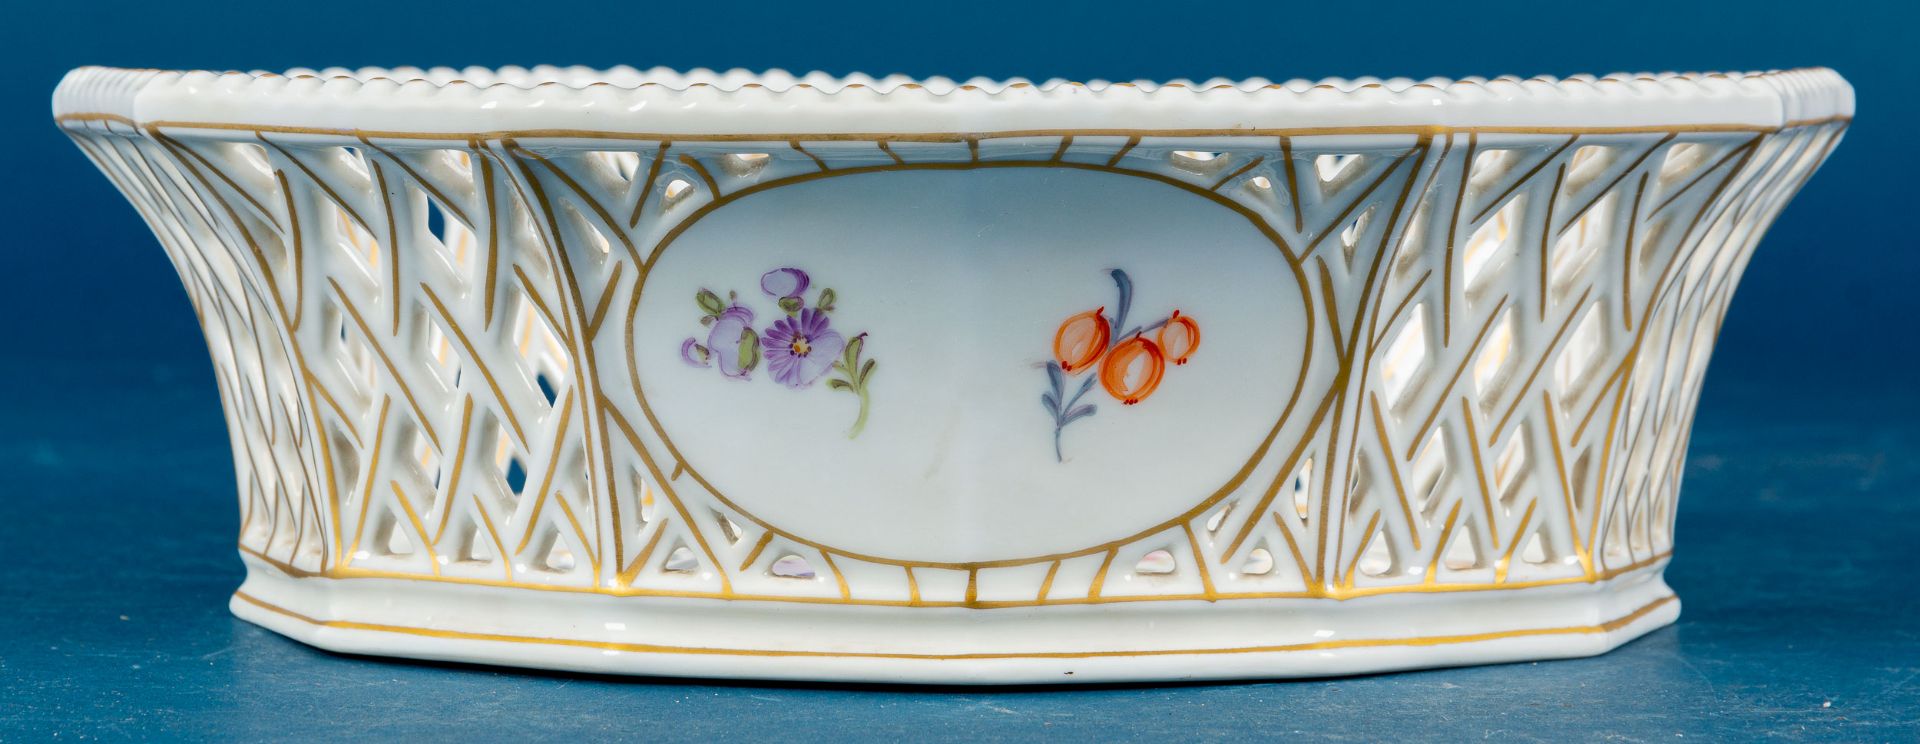 Ovaler Frühstückskorb, Nymphenburg, Weißporzellan mit polychromen Floraldekoren & reicher Goldmaler - Bild 3 aus 10